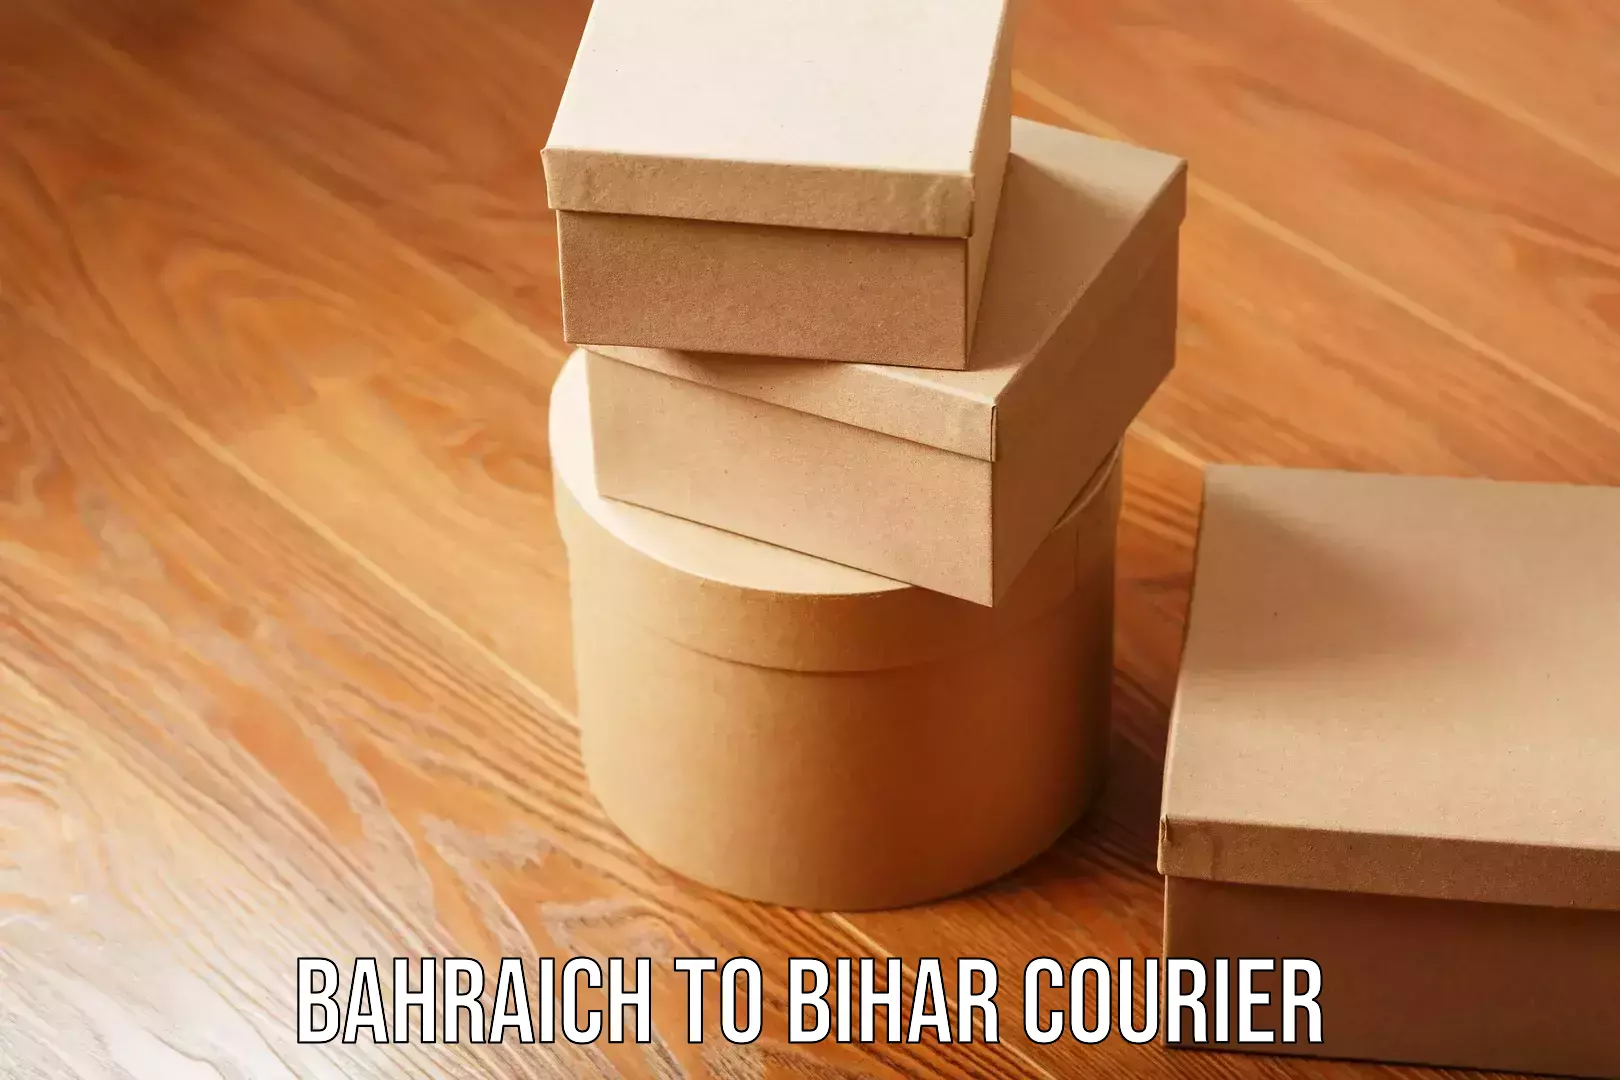 Bulk order courier Bahraich to Bihar